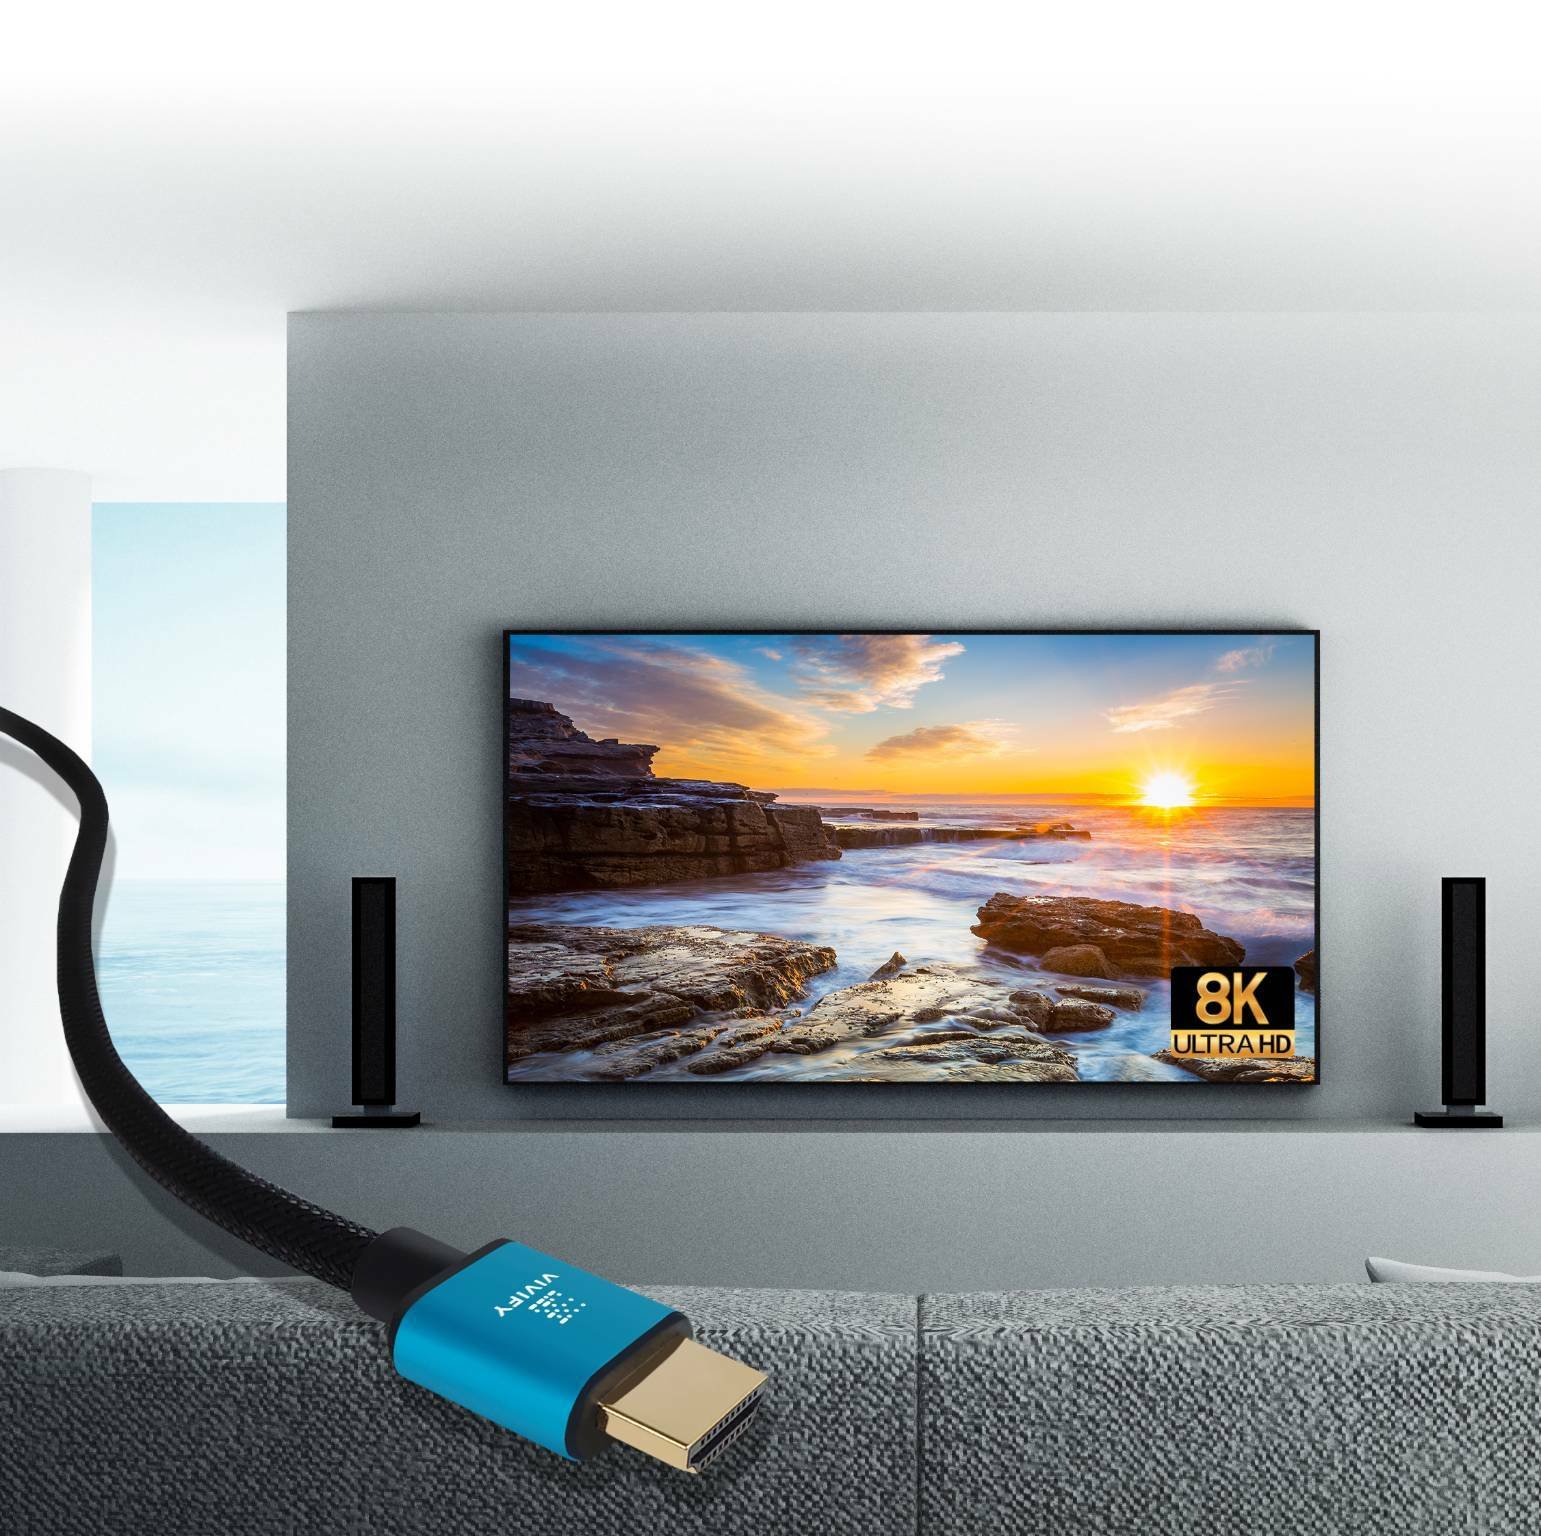 Immagine di Vivify, i nuovi cavi UHS HDMI 2.1 48G sono già pronti per i dispositivi 8K